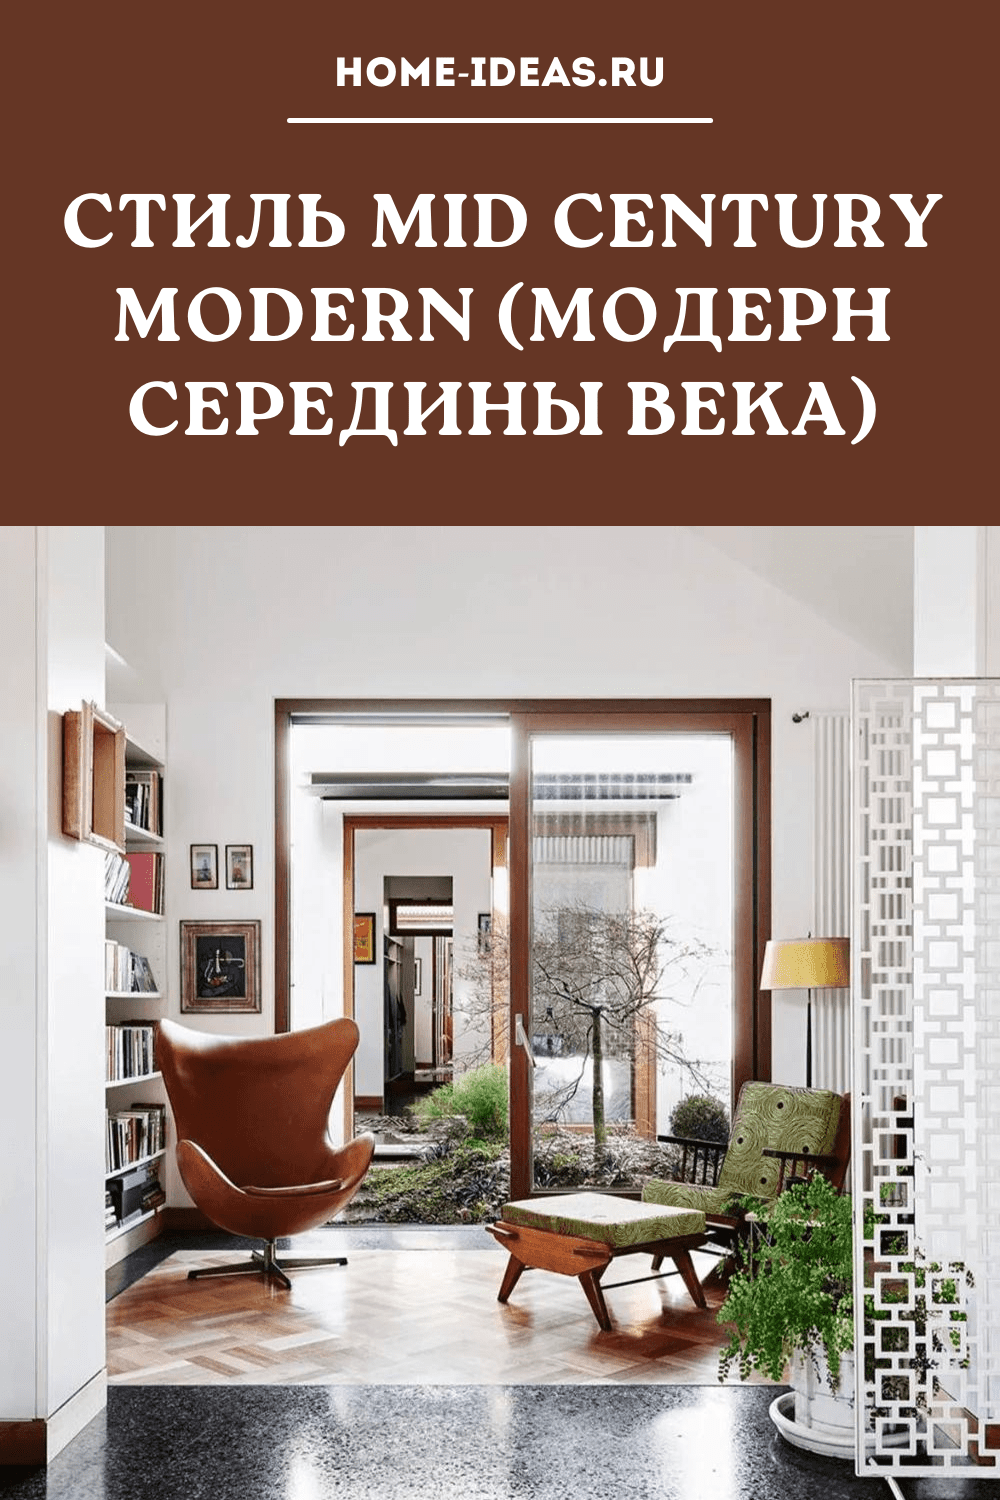 Стиль mid century modern (модерн середины века)